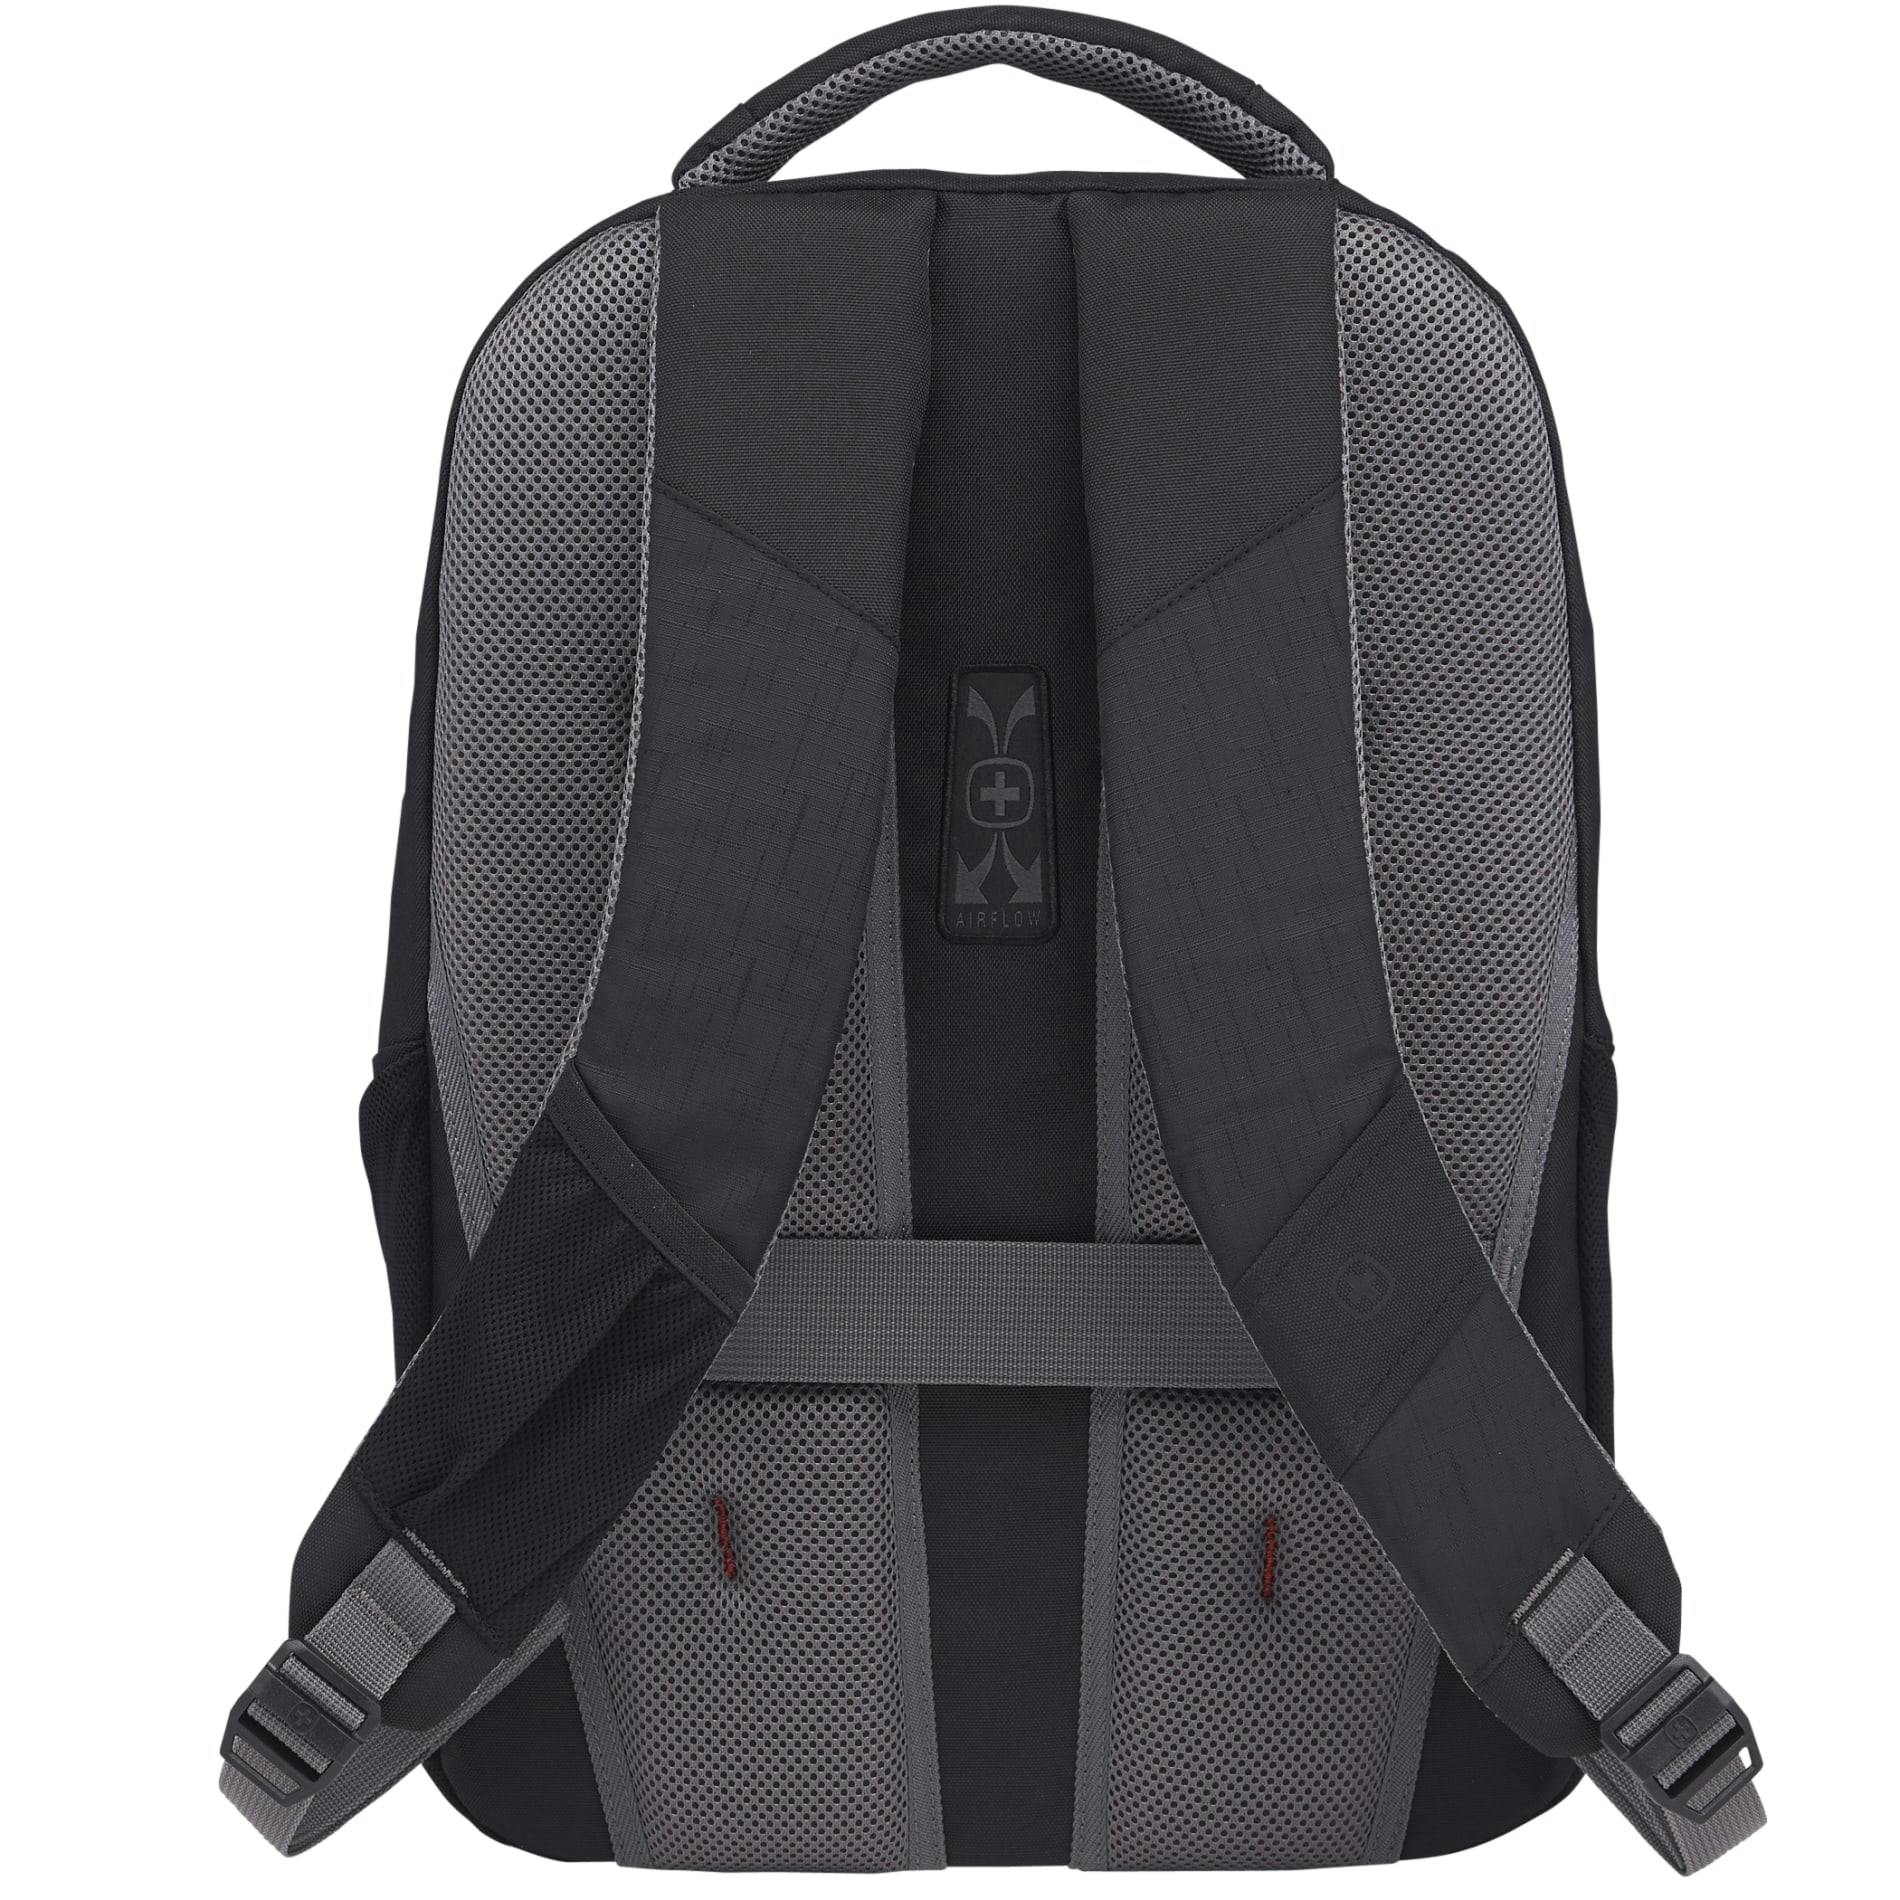 Wenger Pro II 17" Computer Backpack - additional Image 3